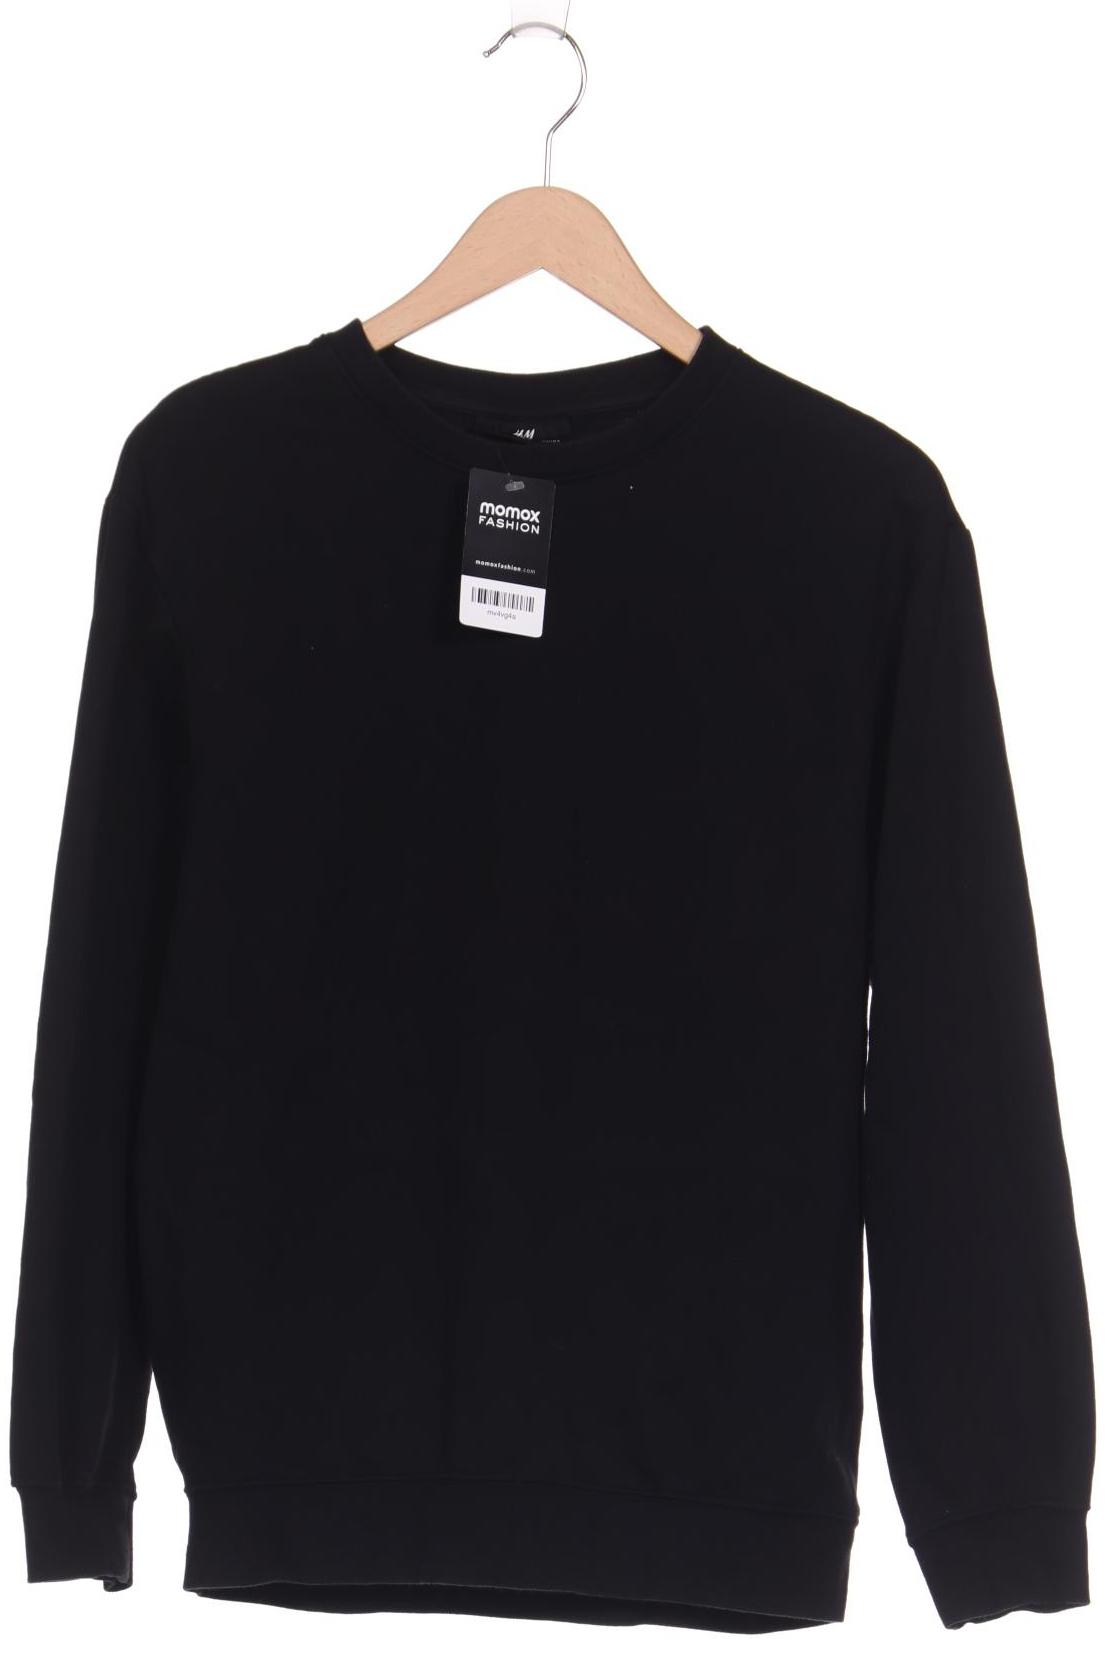 H&M Damen Sweatshirt, schwarz von H&M